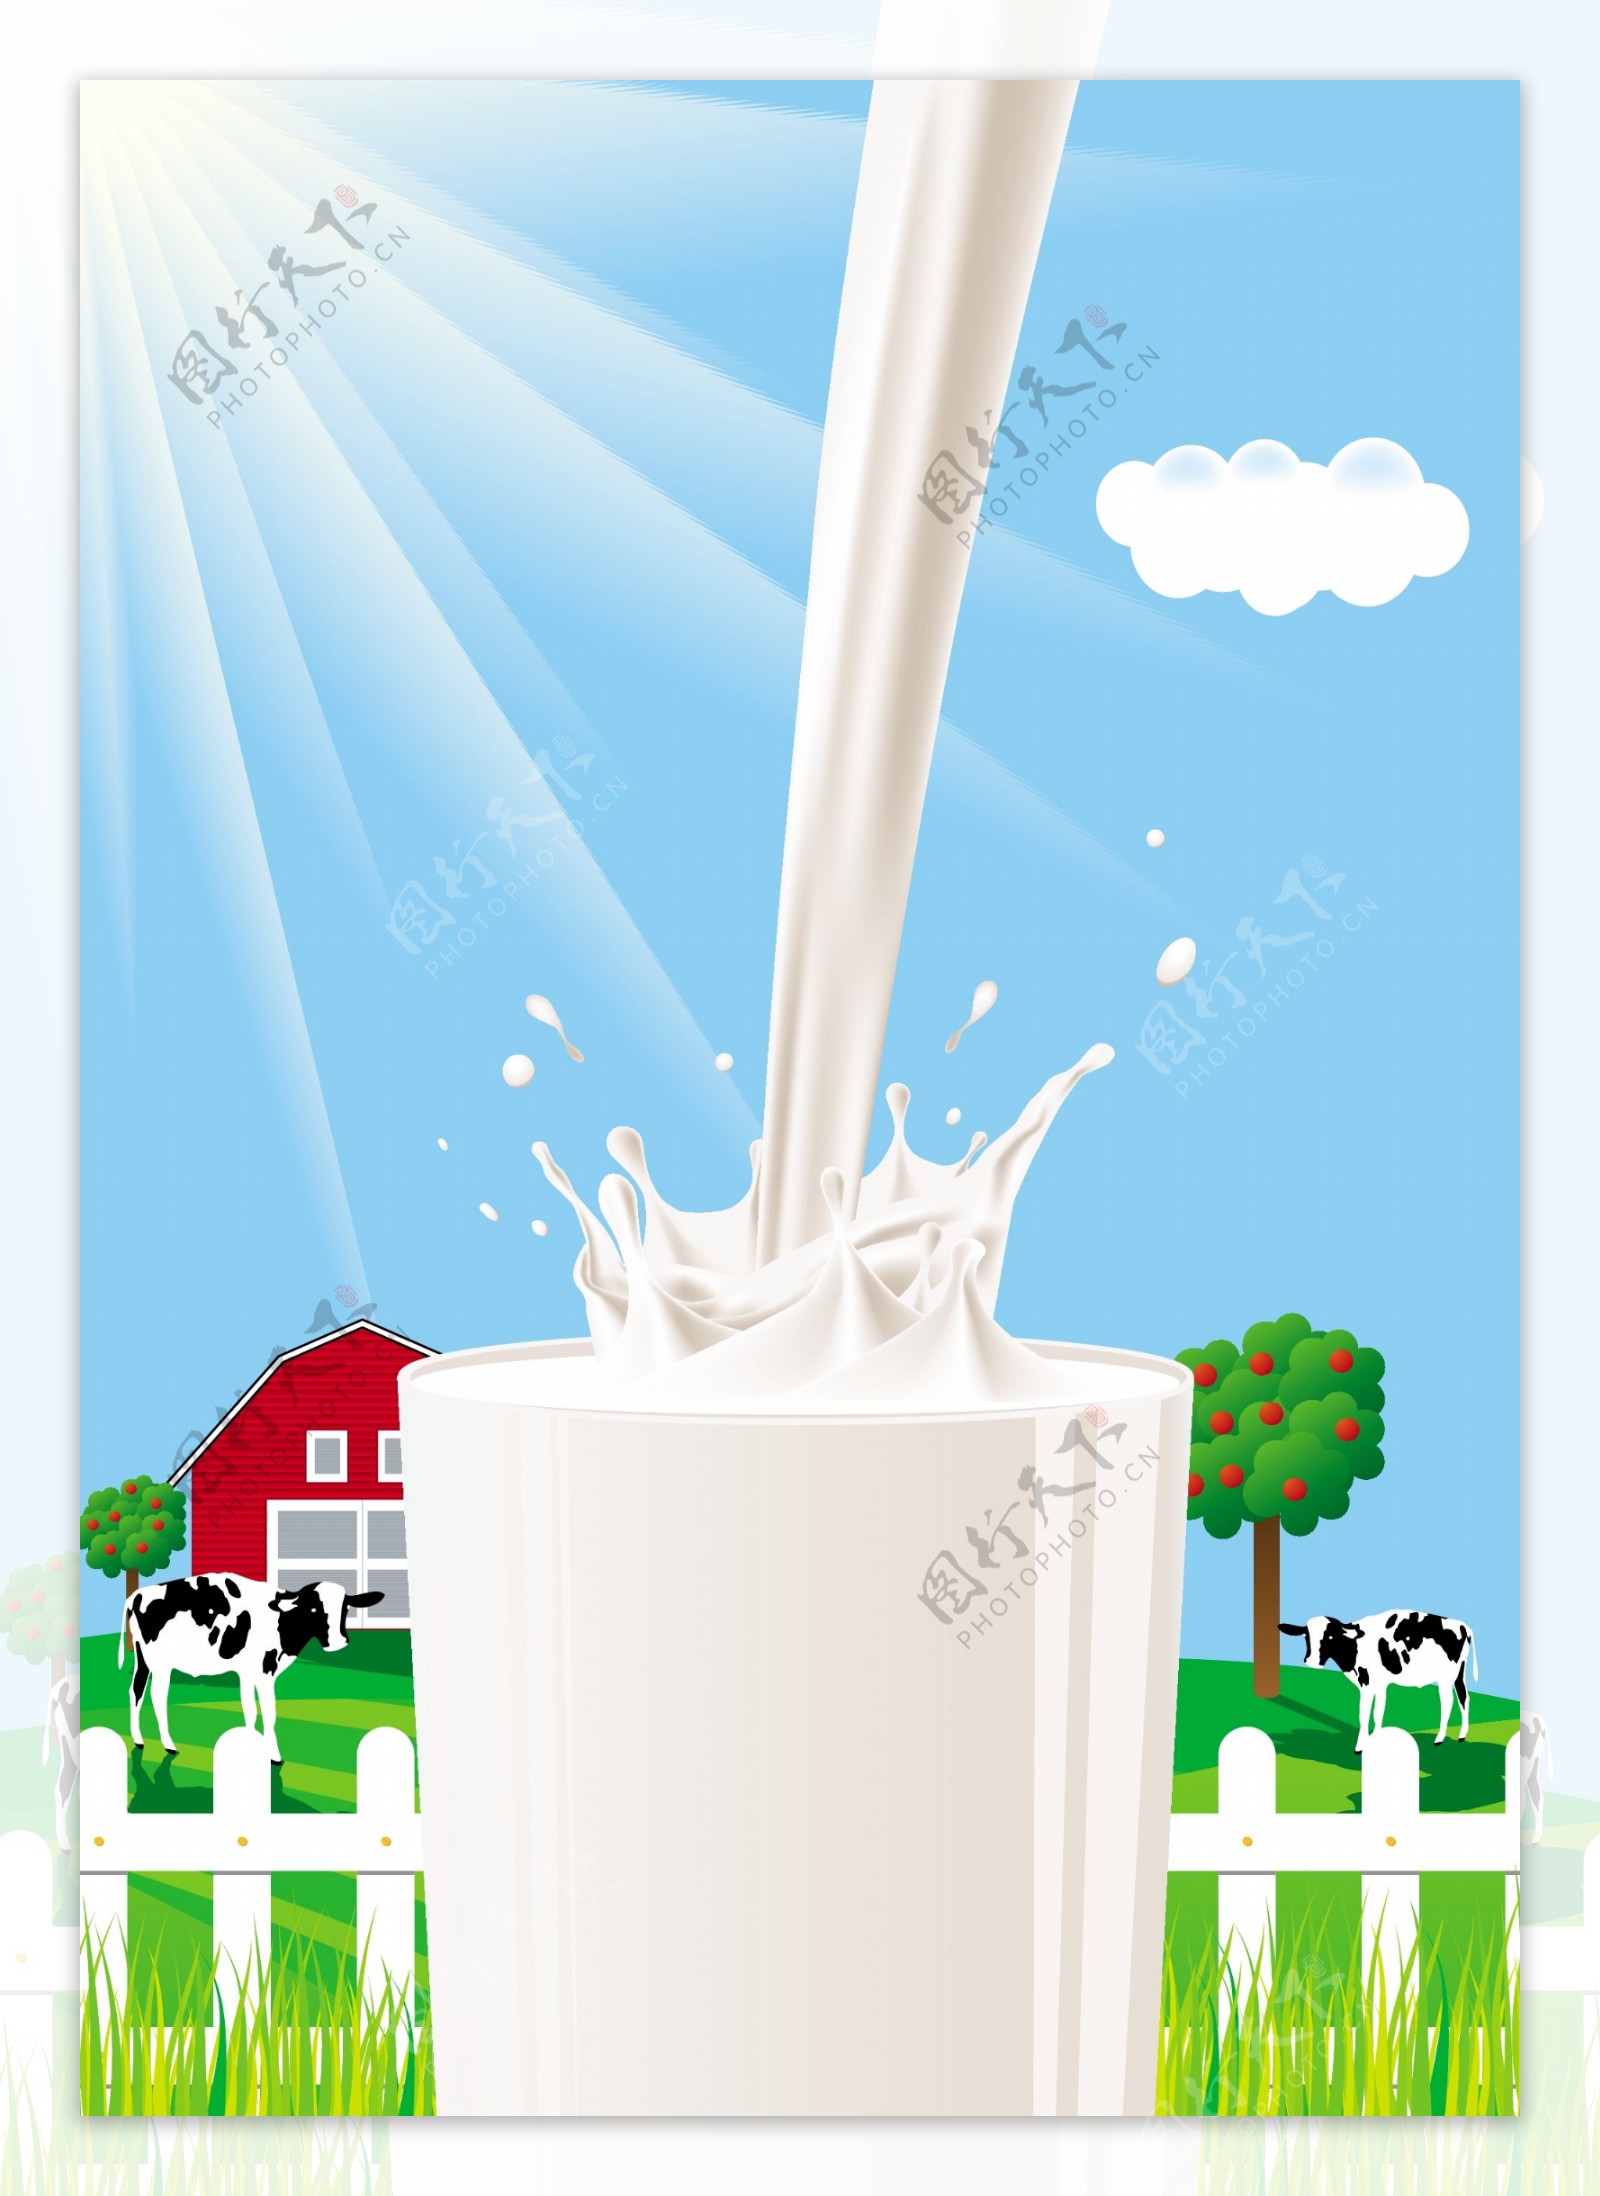 牛奶矢量图